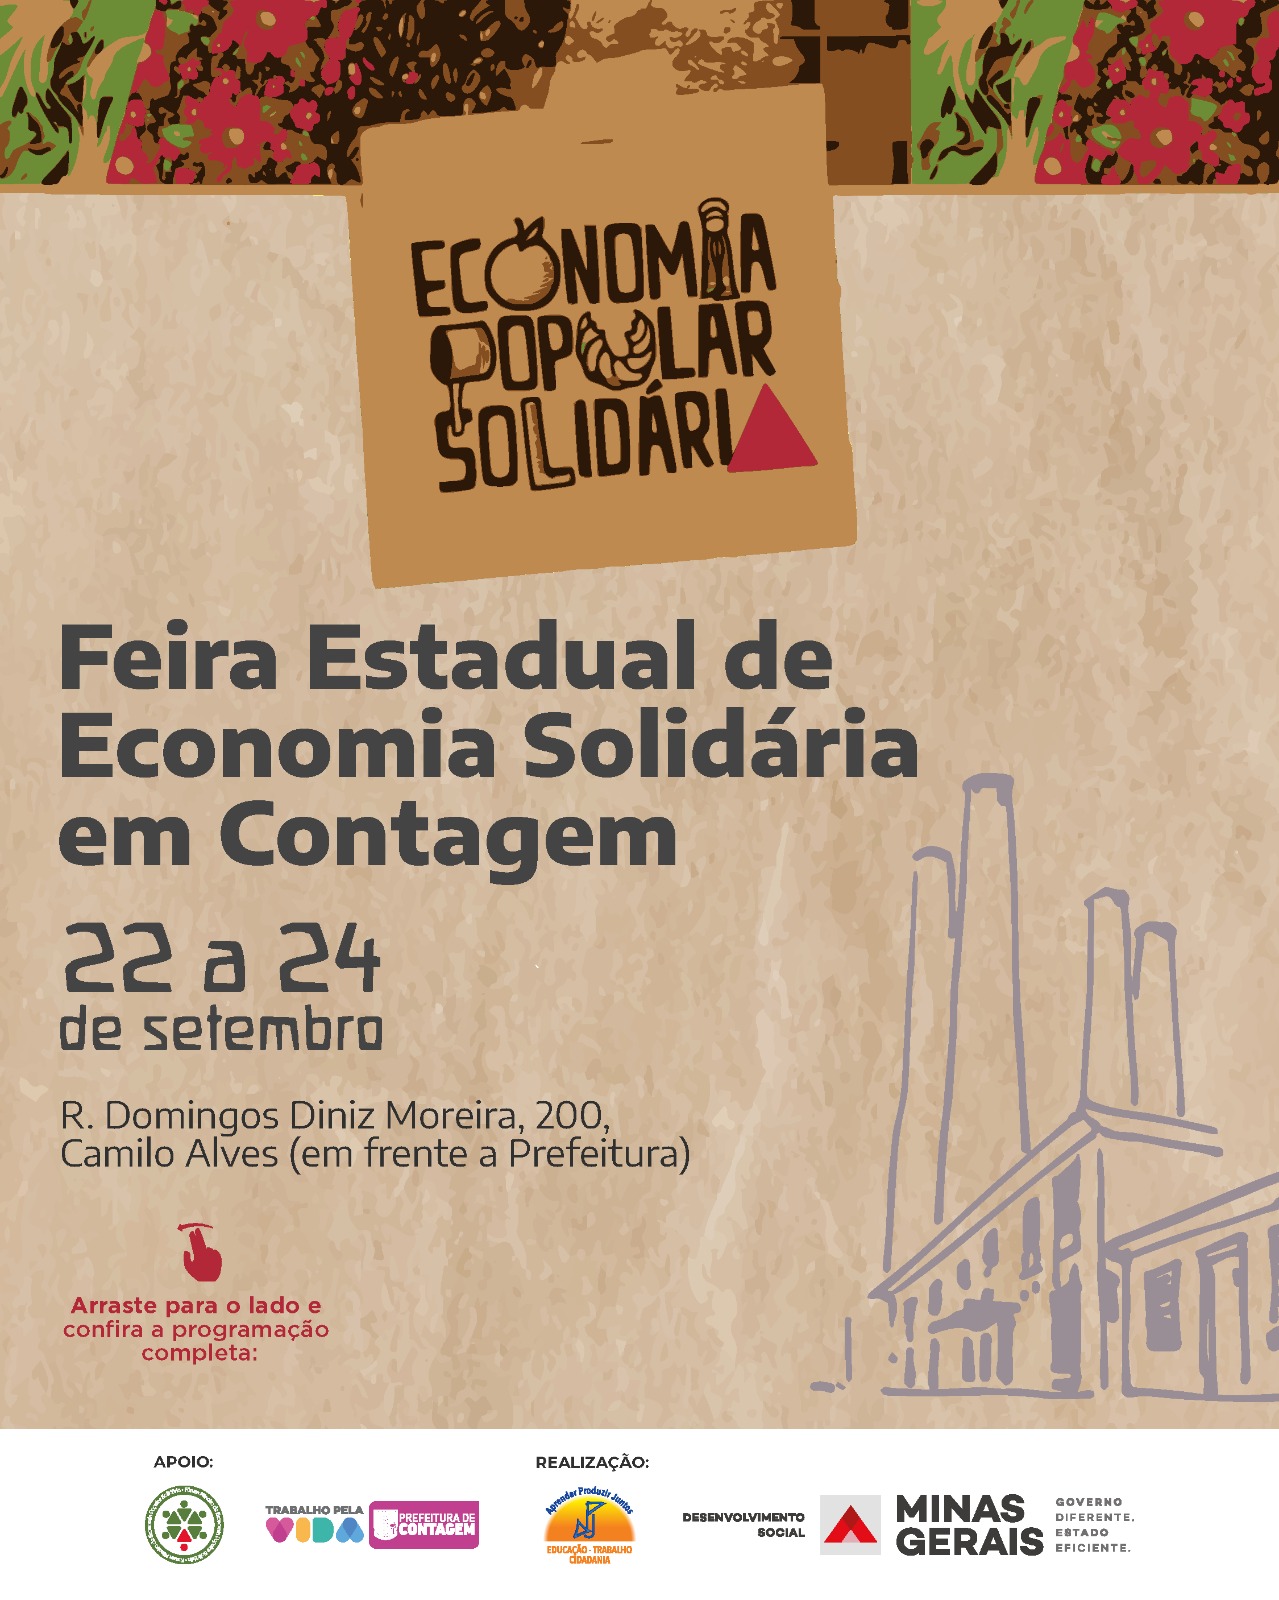 Feira Estadual de Economia Popular Solidária acontece essa semana